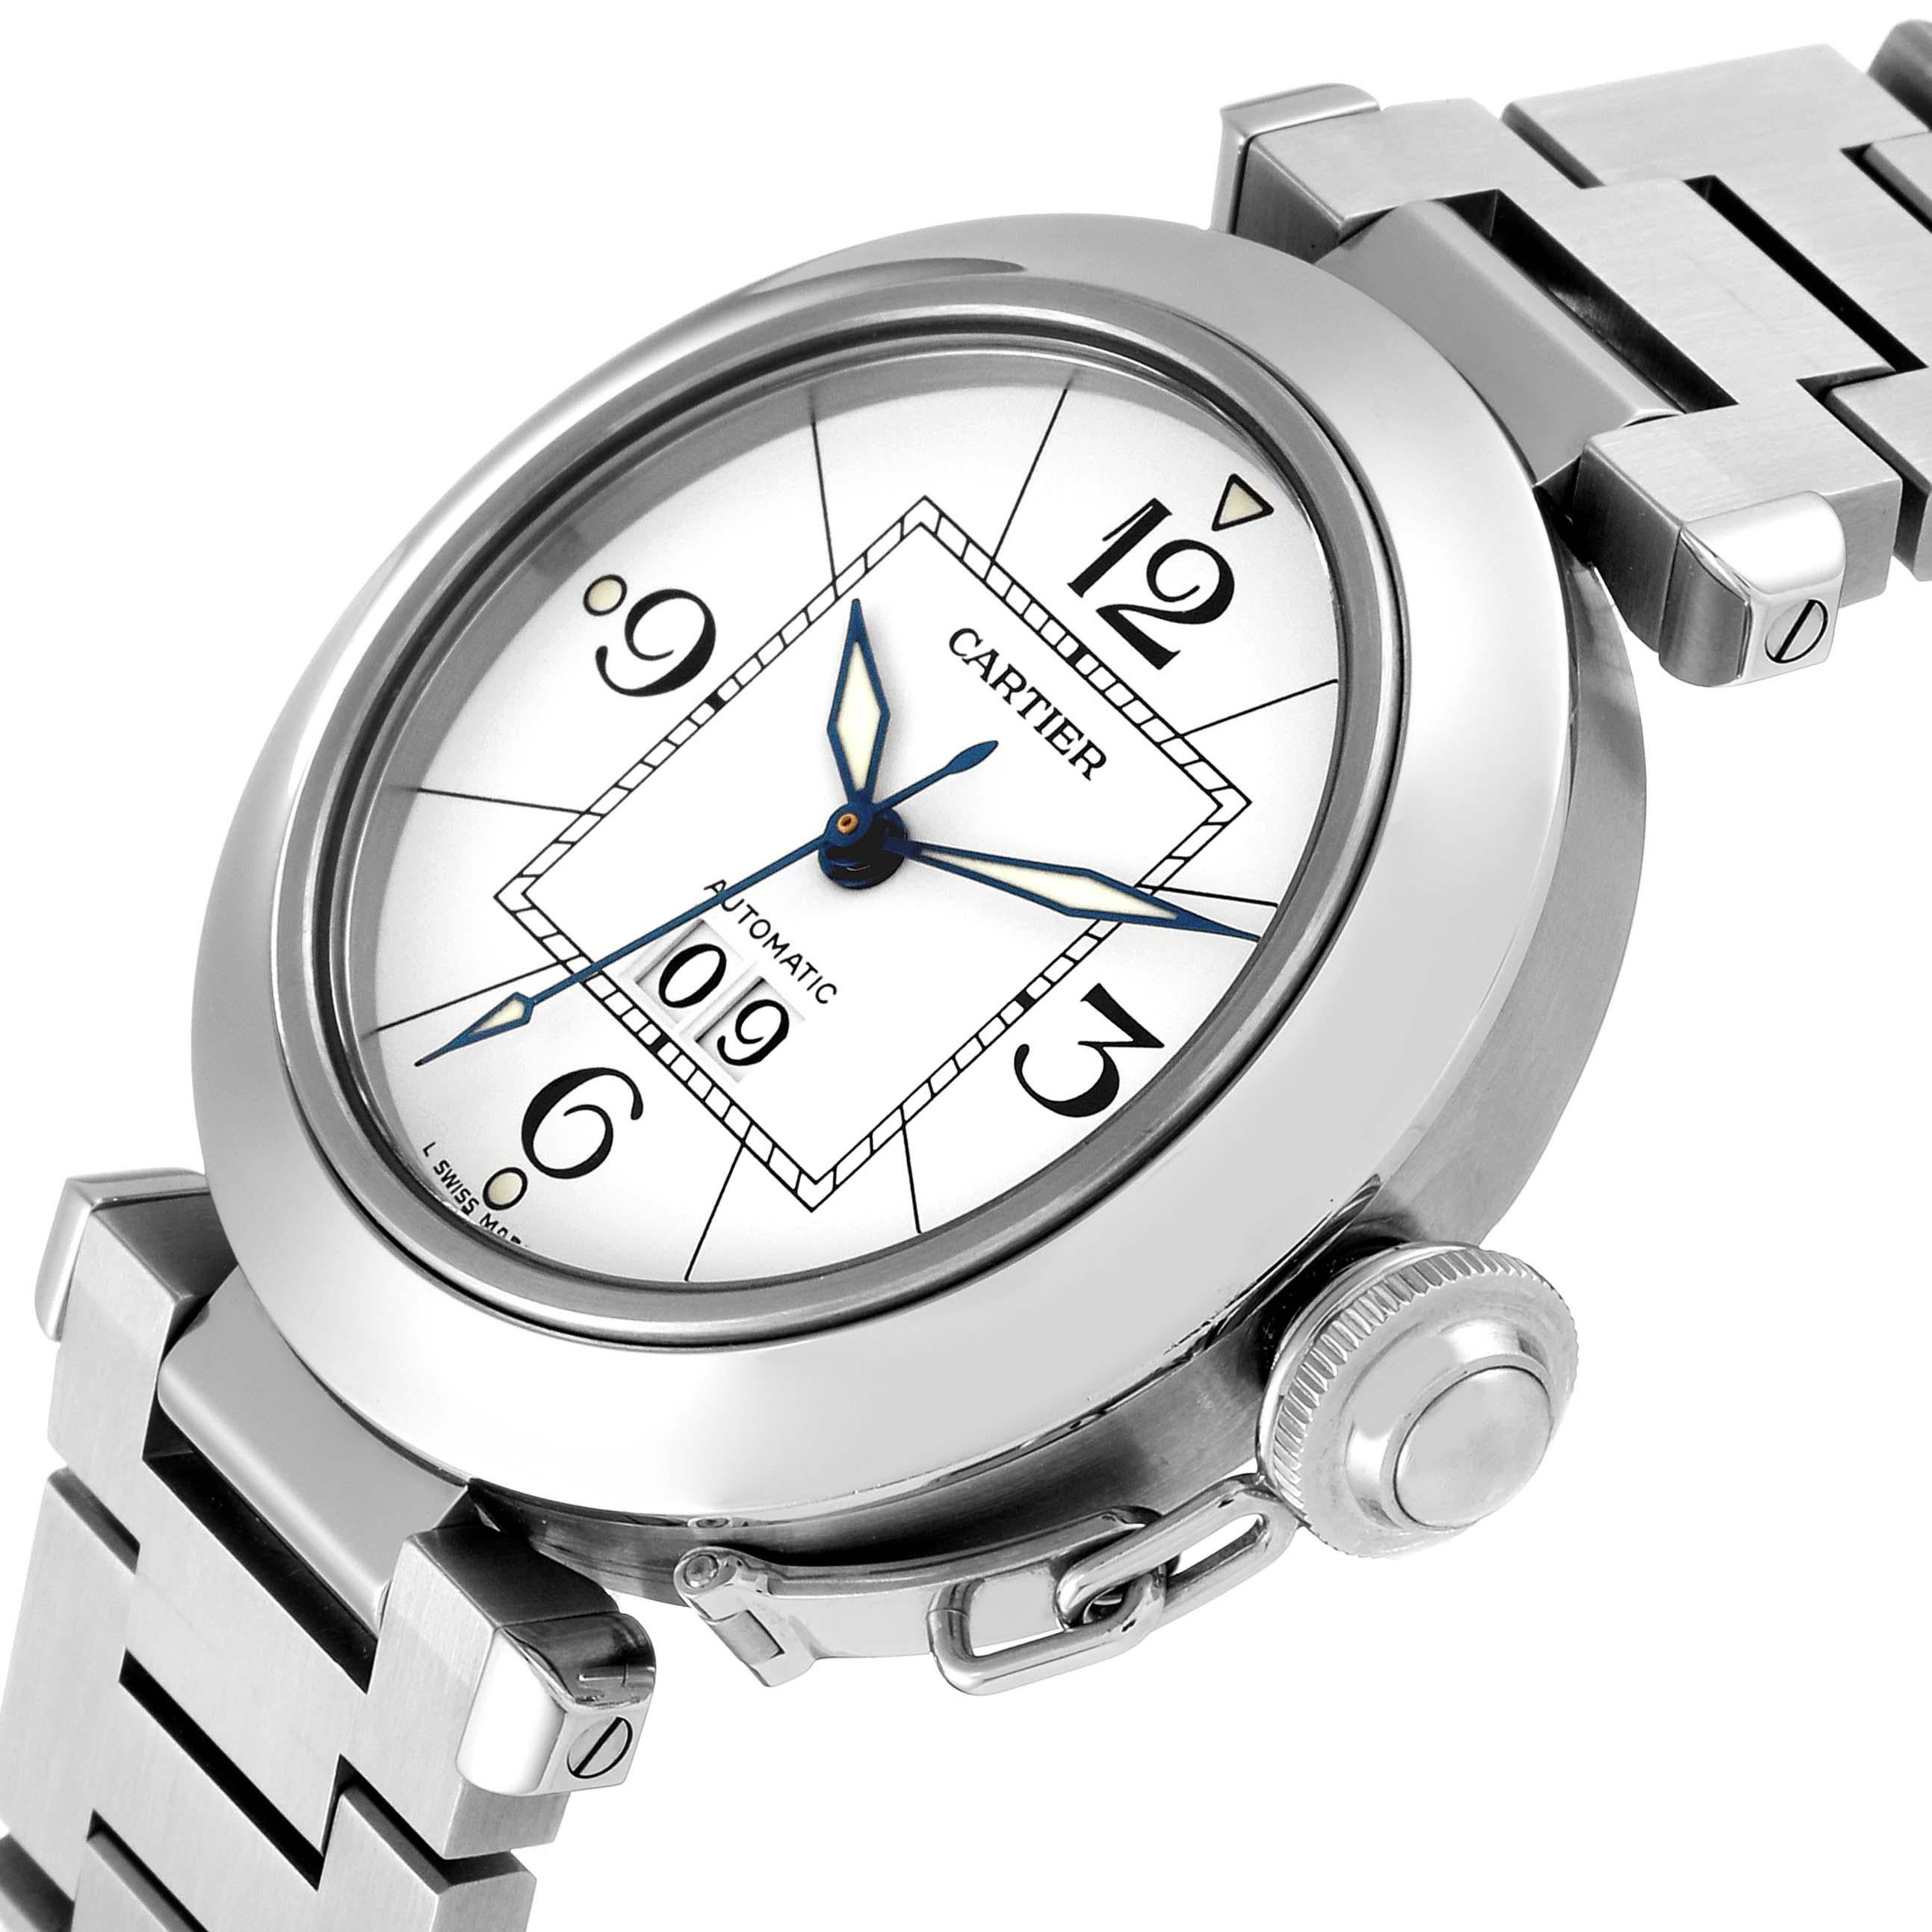 Cartier Pasha C Big Date Midsize Stahl Weißes Zifferblatt Herrenuhr W31055M7. Automatisches Uhrwerk mit Selbstaufzug. Gehäuse aus poliertem und gebürstetem Edelstahl mit einem Durchmesser von 35,0 mm. Gehäuseboden mit 8 Schrauben. Verschrauben Sie